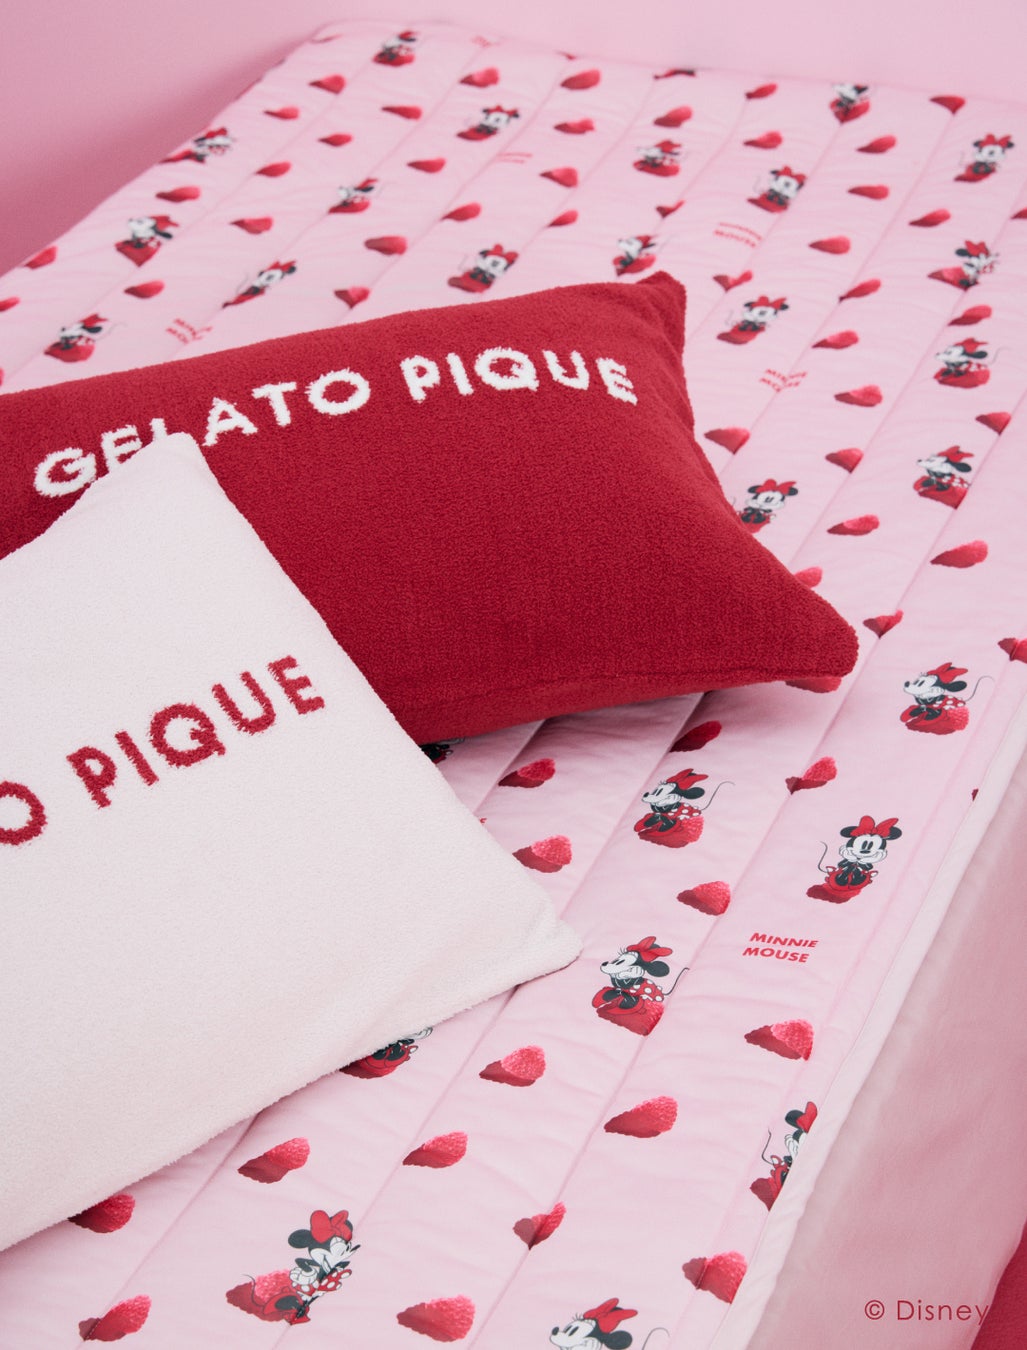 「gelato pique（ジェラート ピケ）」ミニーマウスをデザインの主役としたルームウェア、寝具、CAT&DOGの新作...